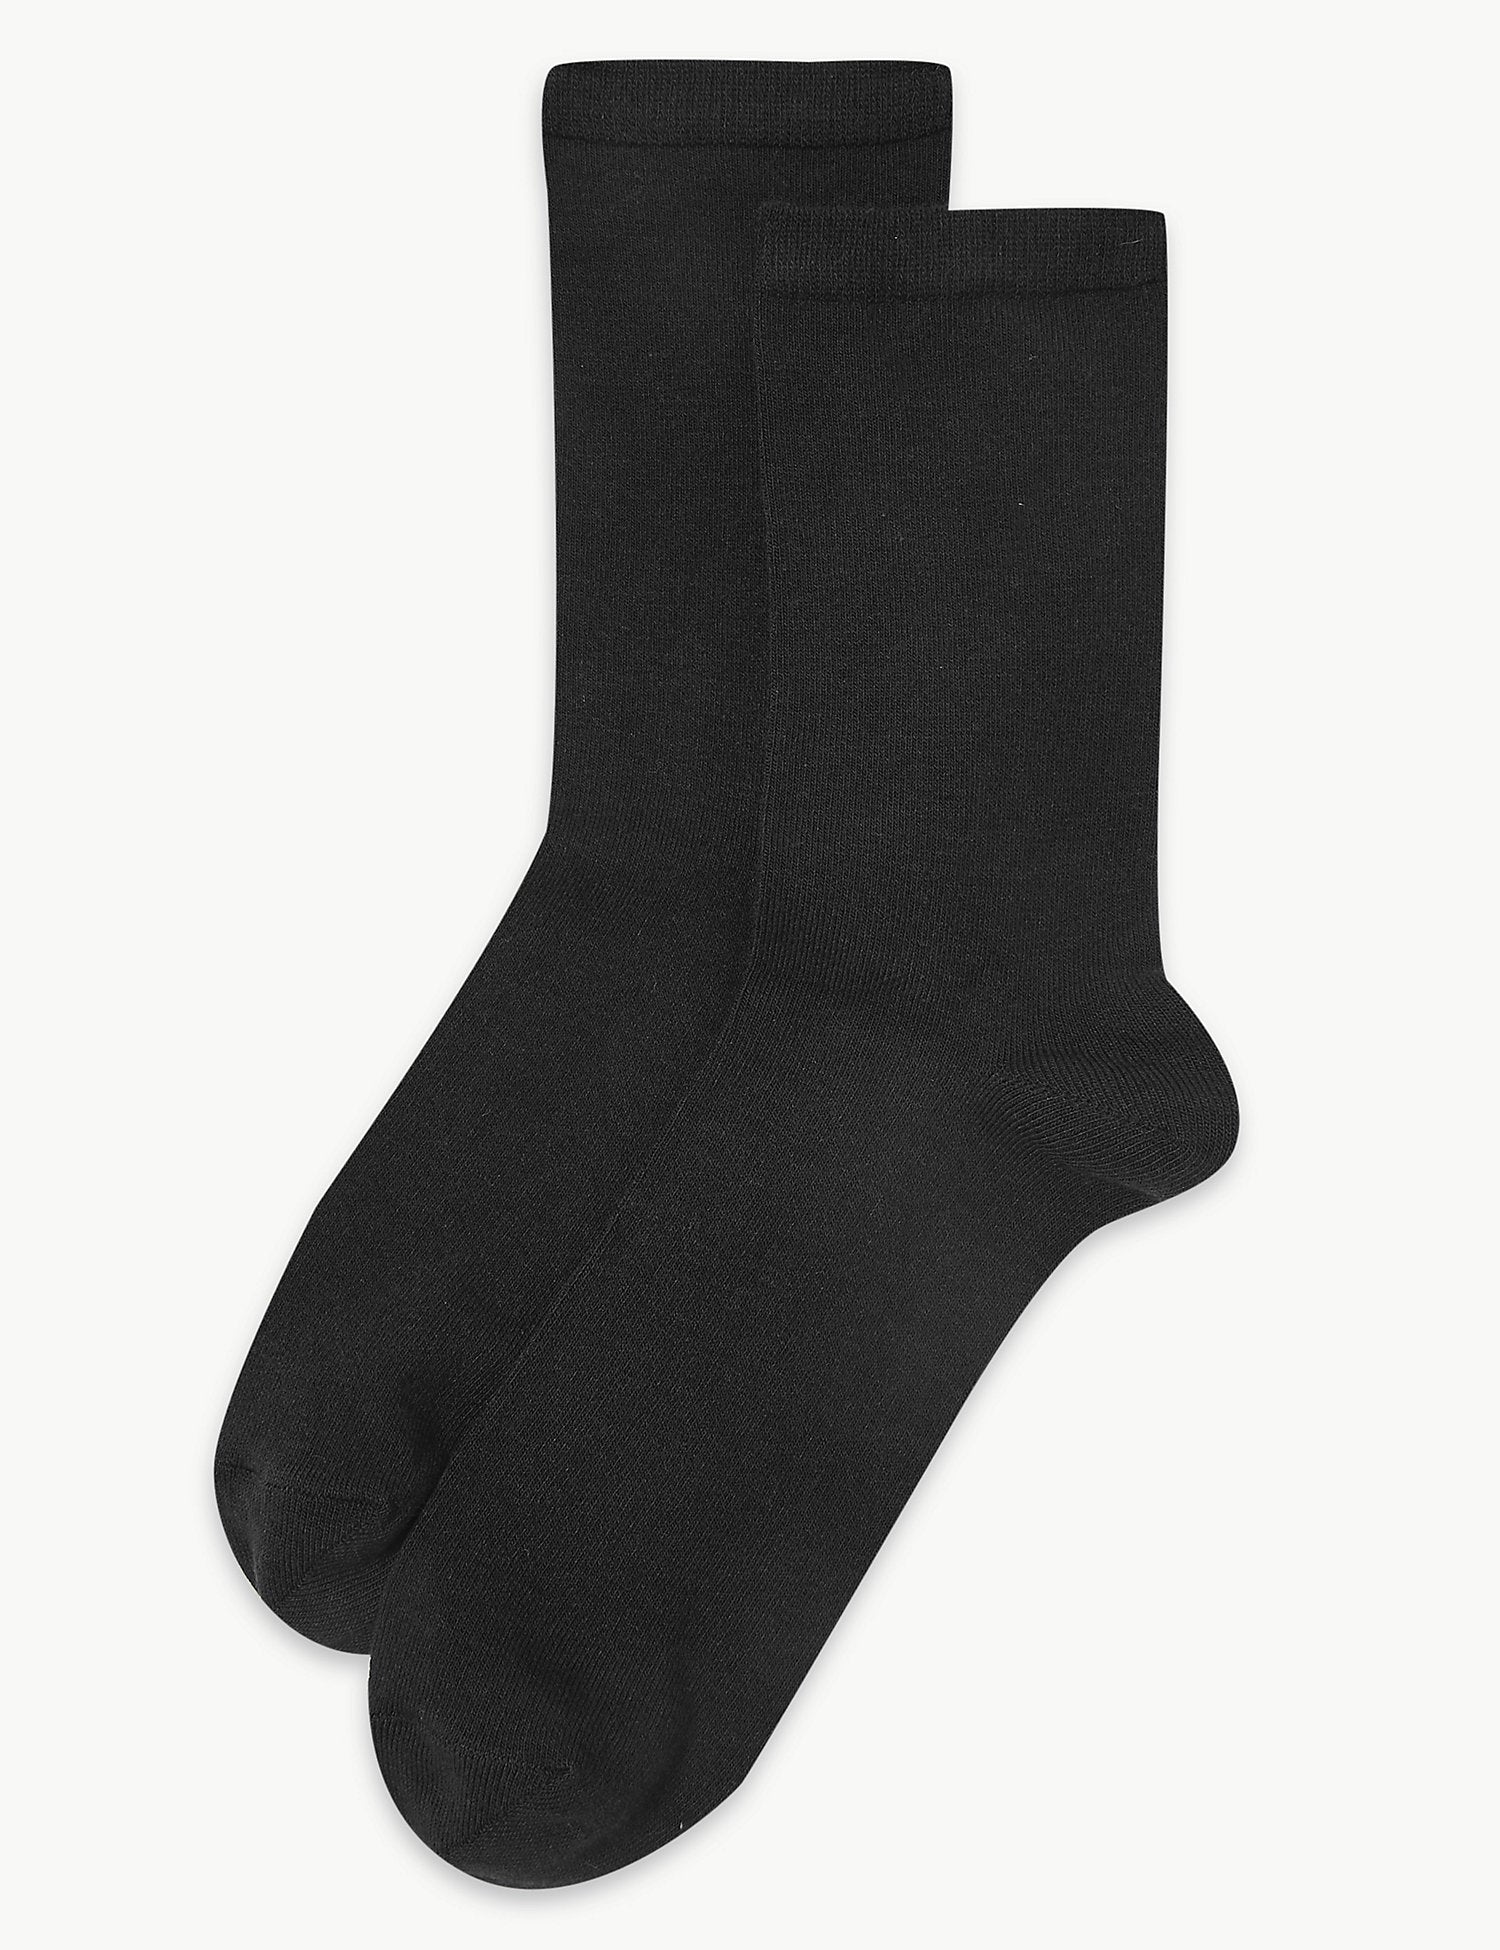 2 Pair Pack Heatgen™ Thermal Ankle High Socks